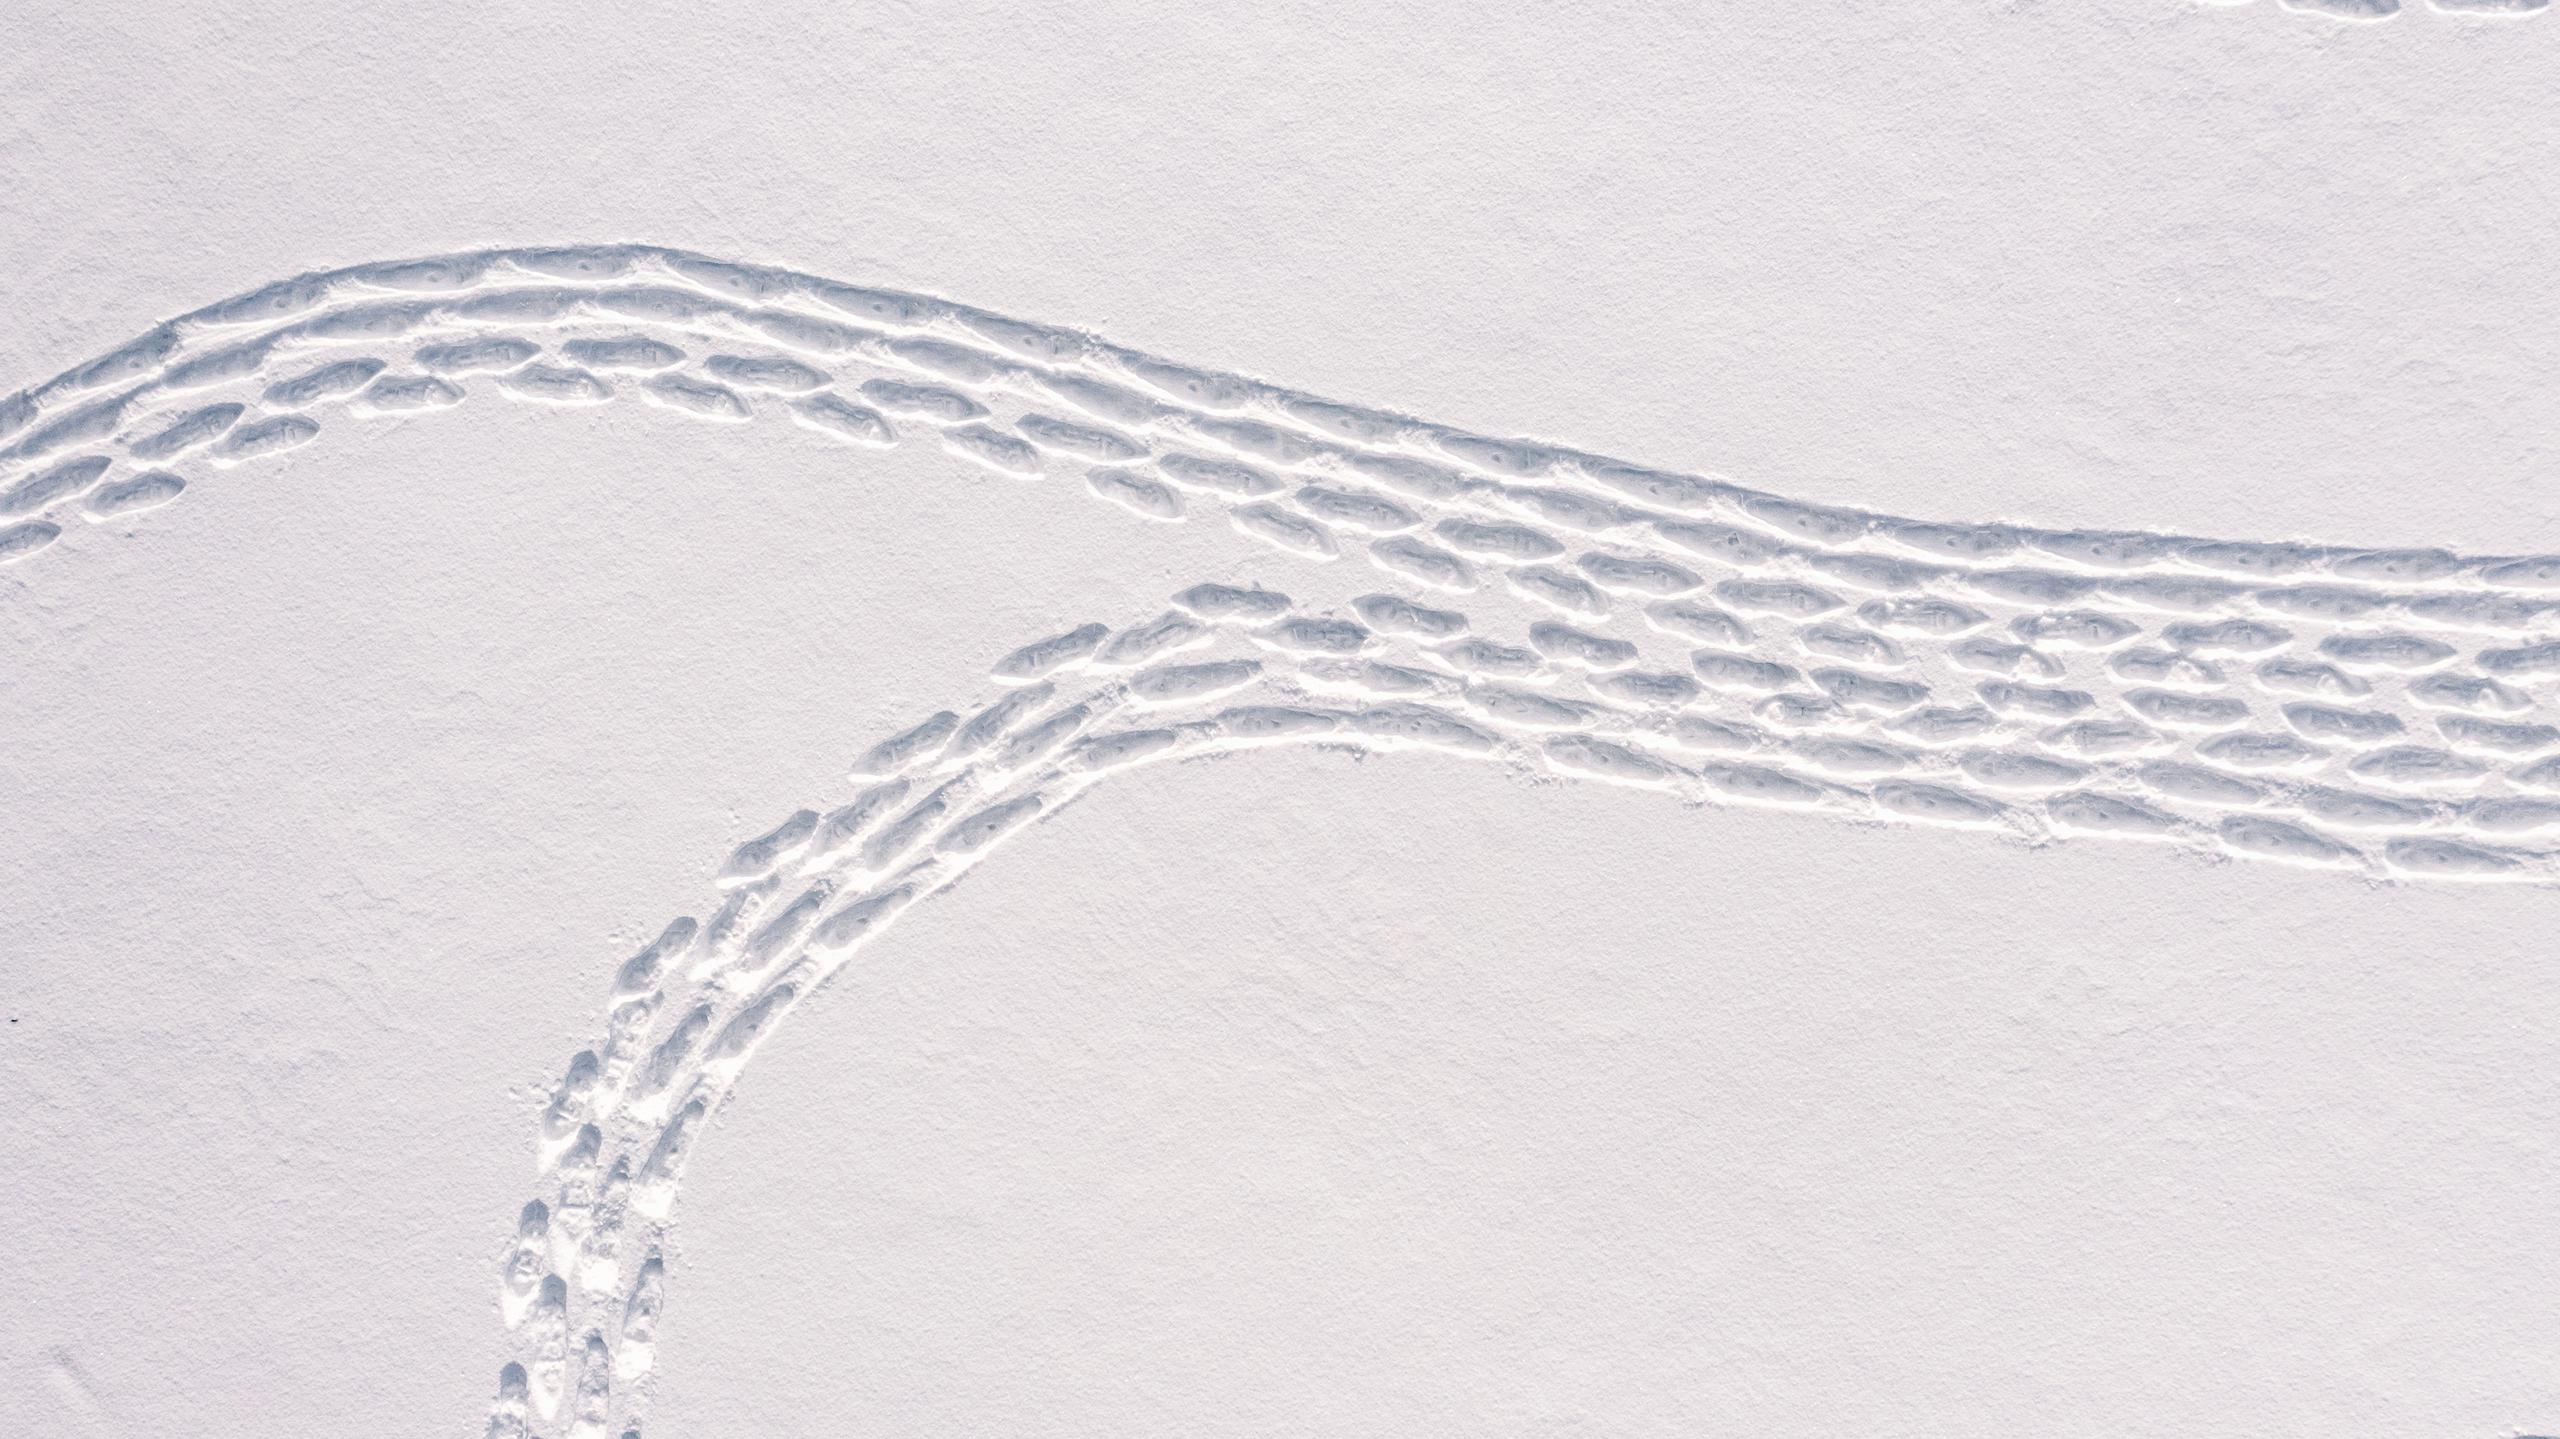 La obra de arte en la nieve cerca de Helsinki, Finlandia, fue creada con cientos de estos pasos.